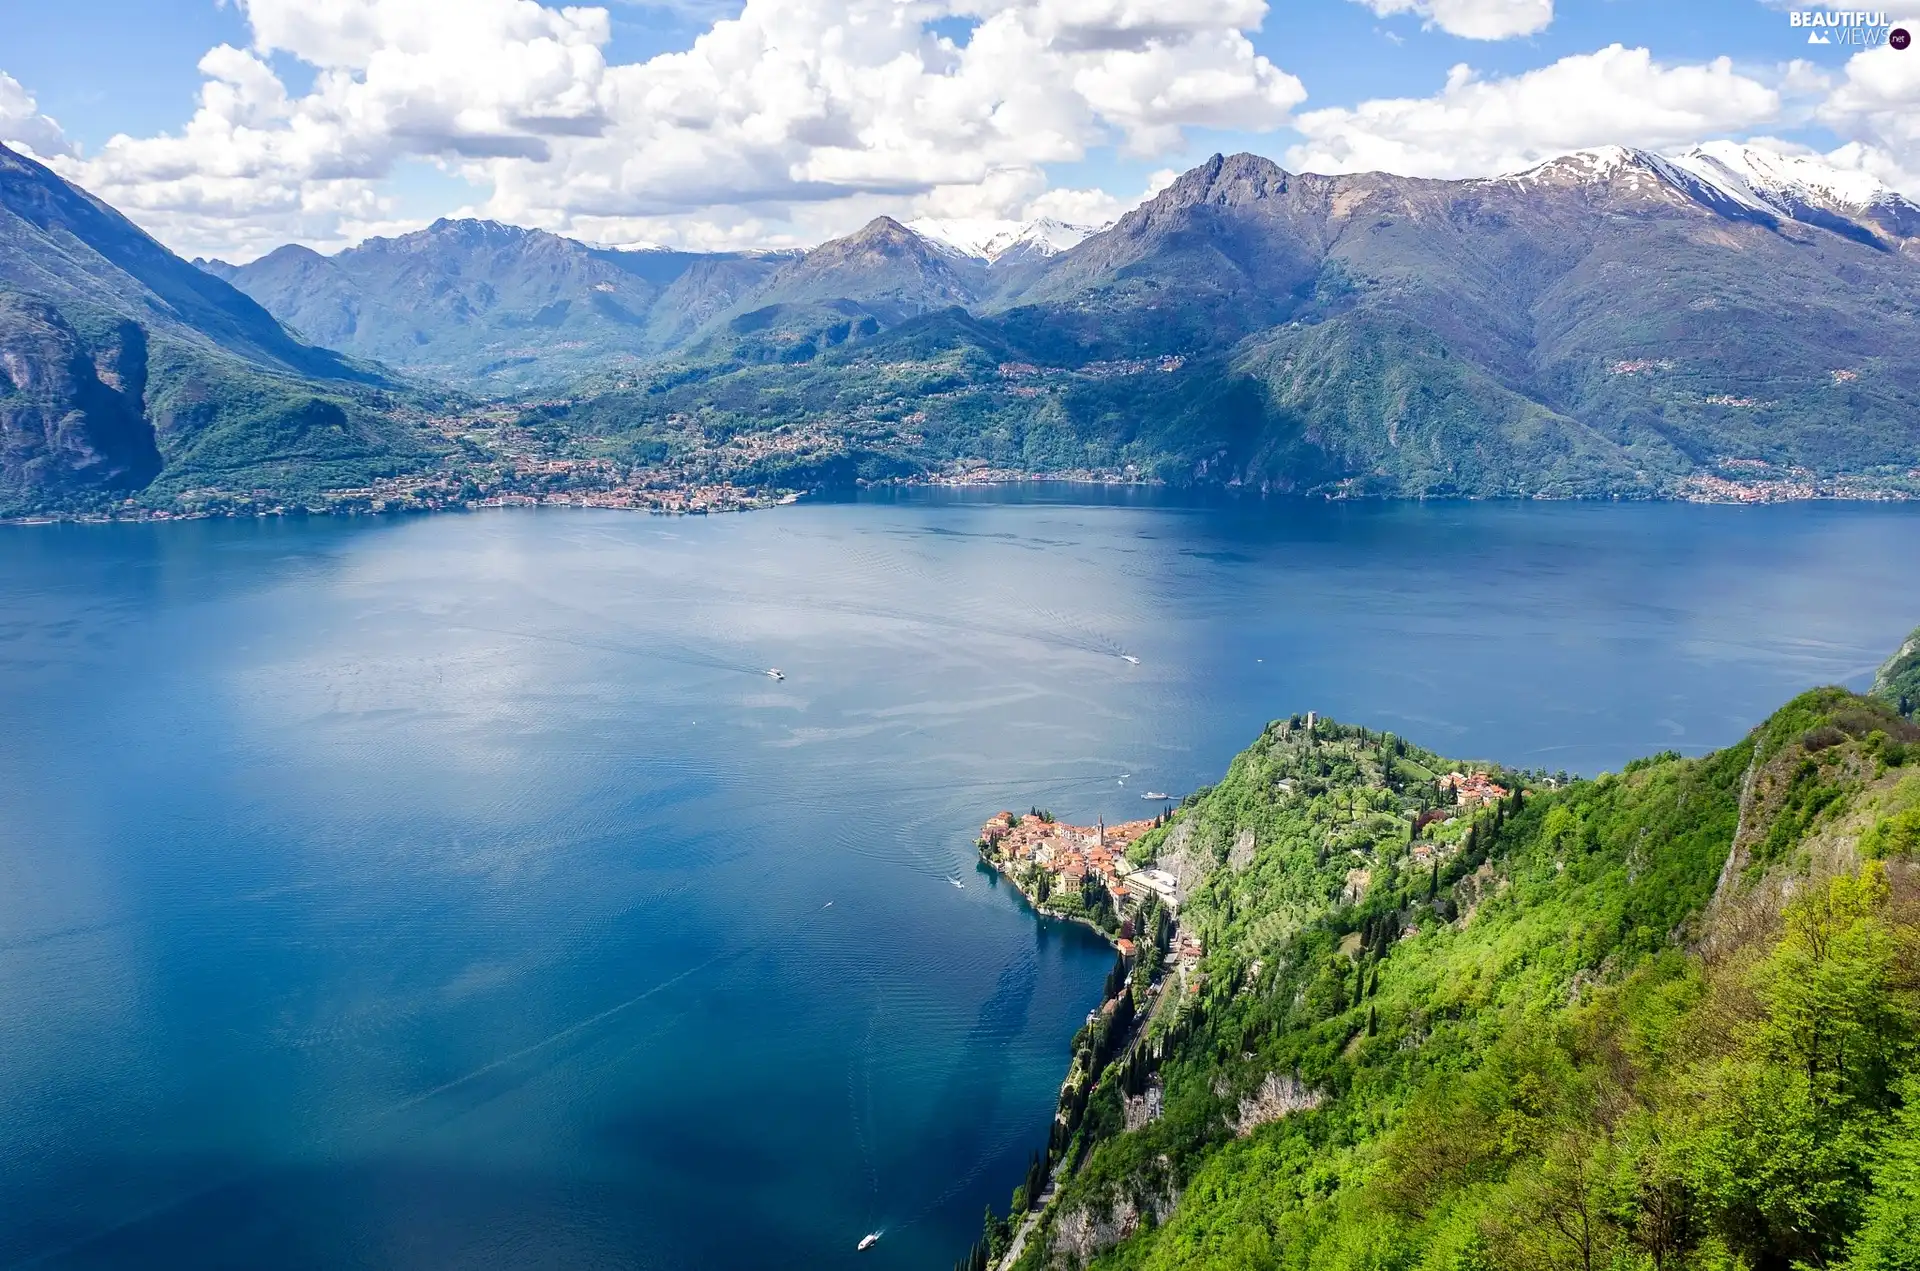 Lago di Como Lake, Italy, Alps Mountains